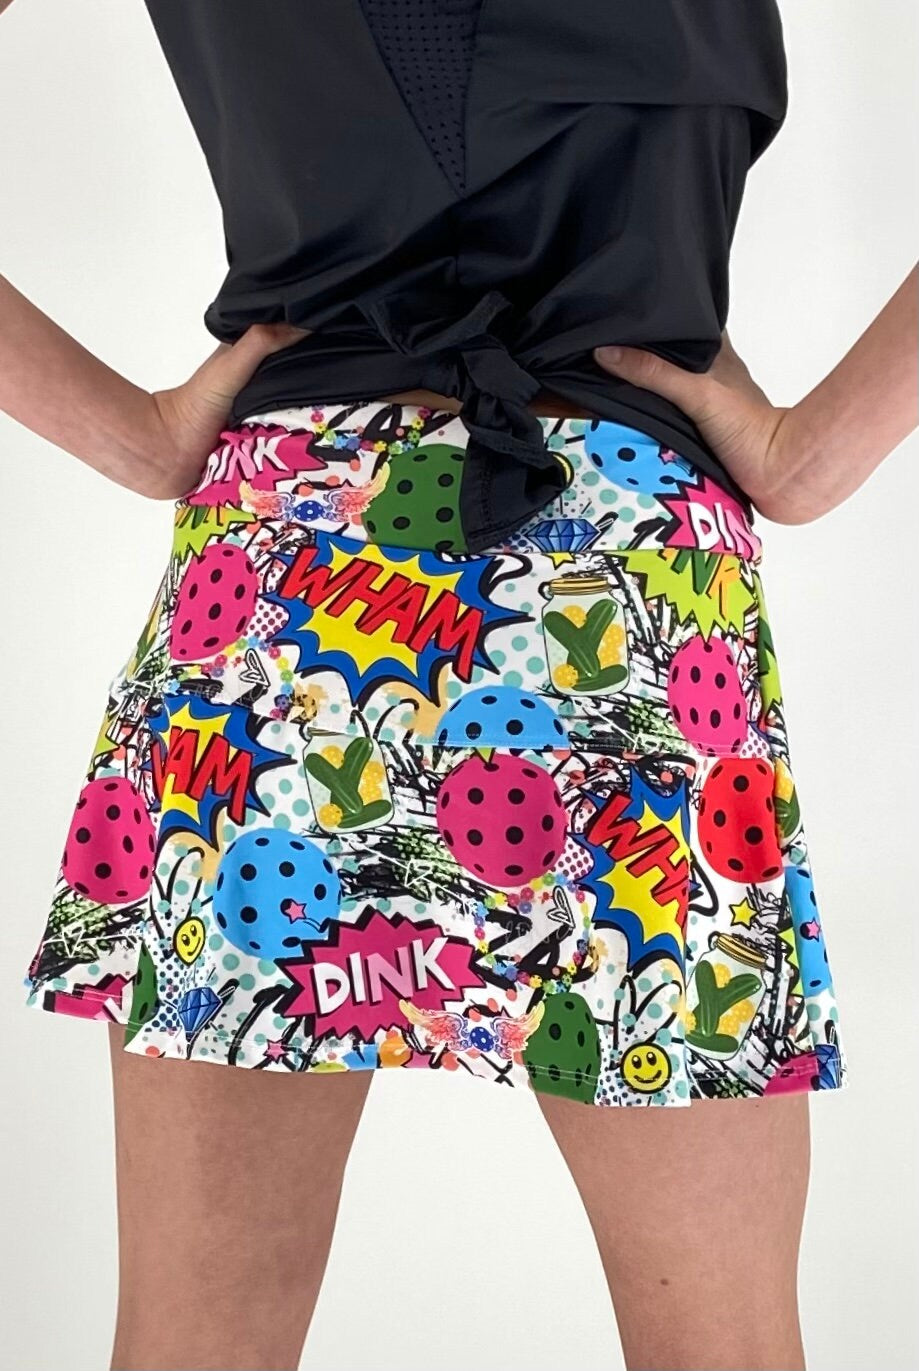 Pickleball Skirt, Pickleball Themed Apparel, Pickleball Gift, Pickleball Skirt for Women